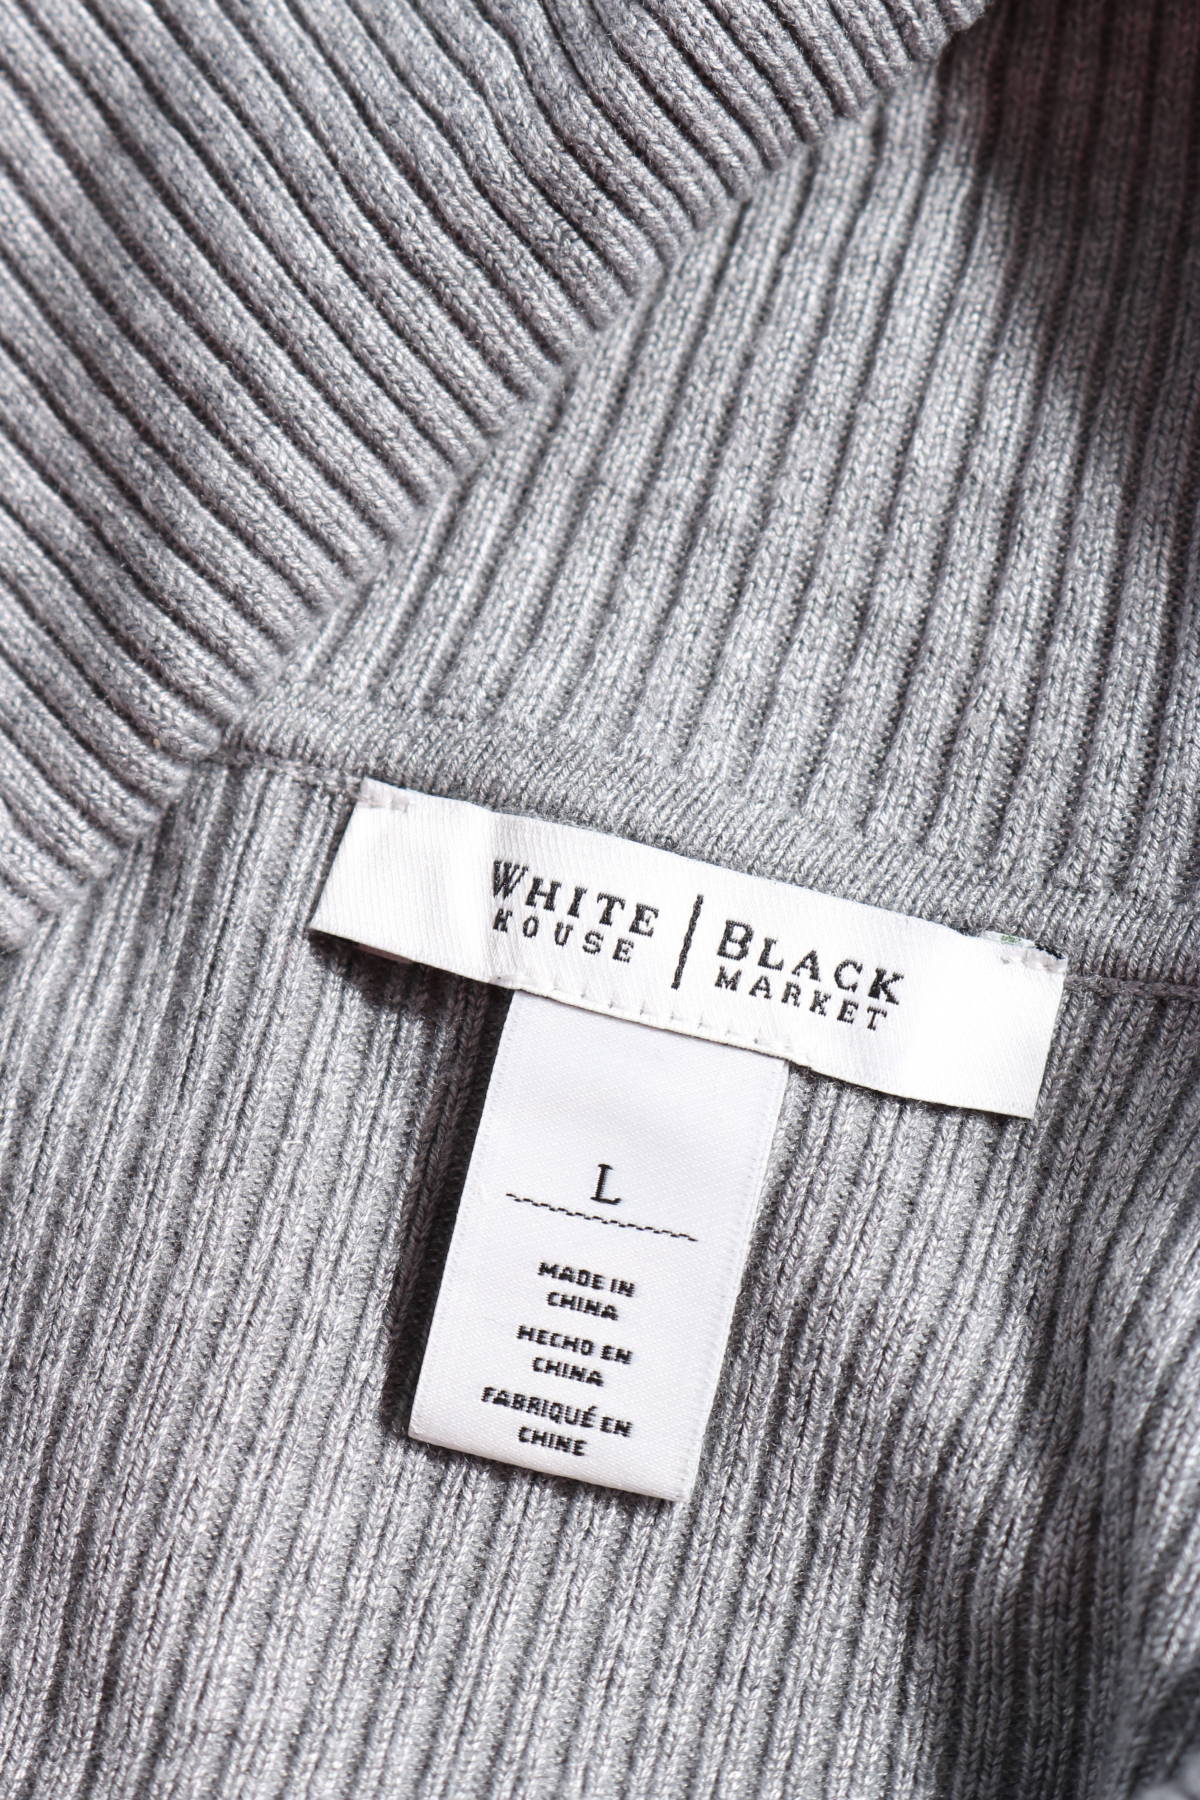 Пуловер с поло яка WHITE HOUSE / BLACK MARKET3